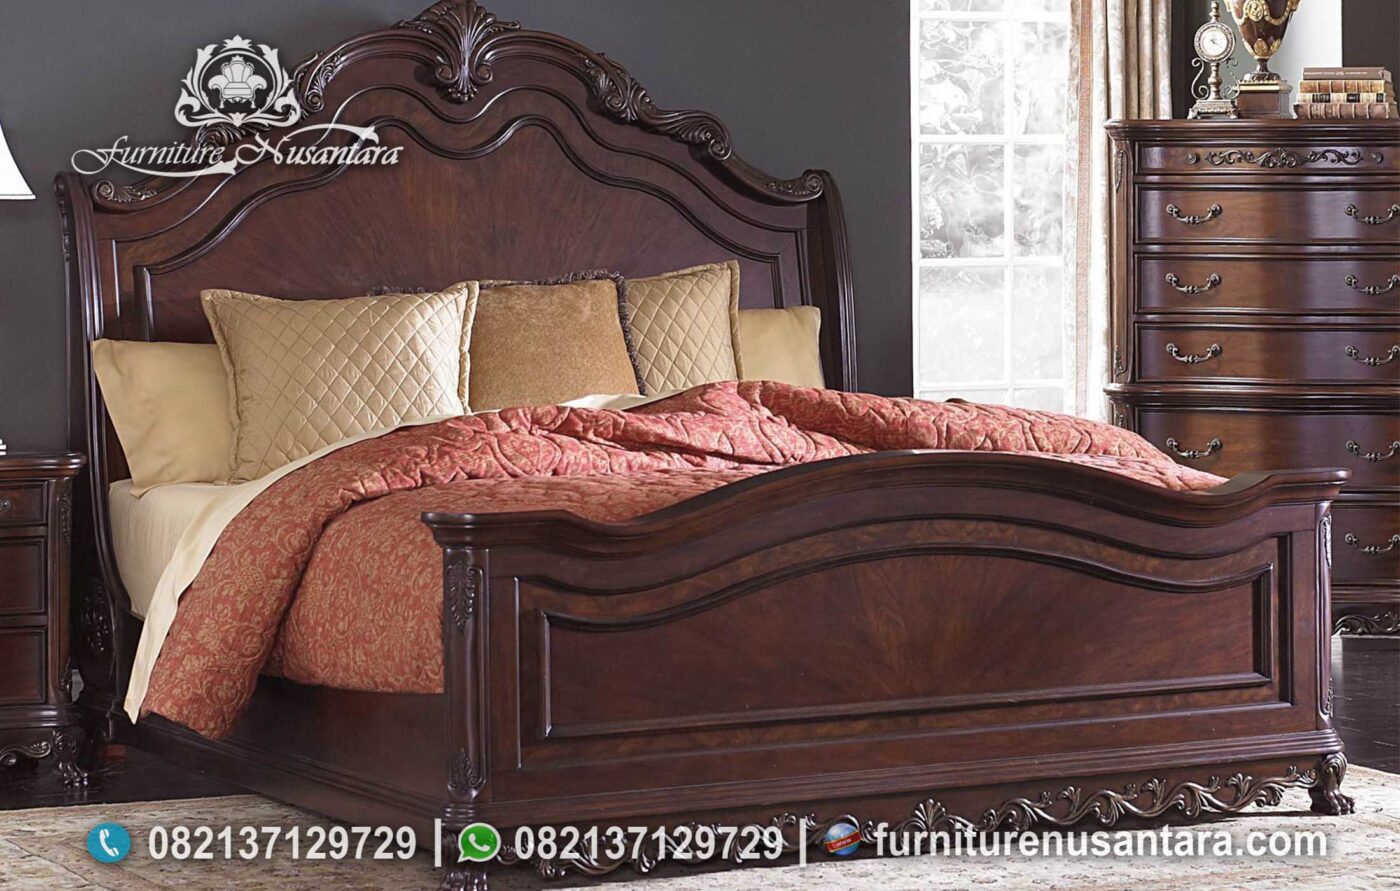 Jual Tempat Tidur Klasik Minimalis Kayu Jati KS-242, Furniture Nusantara